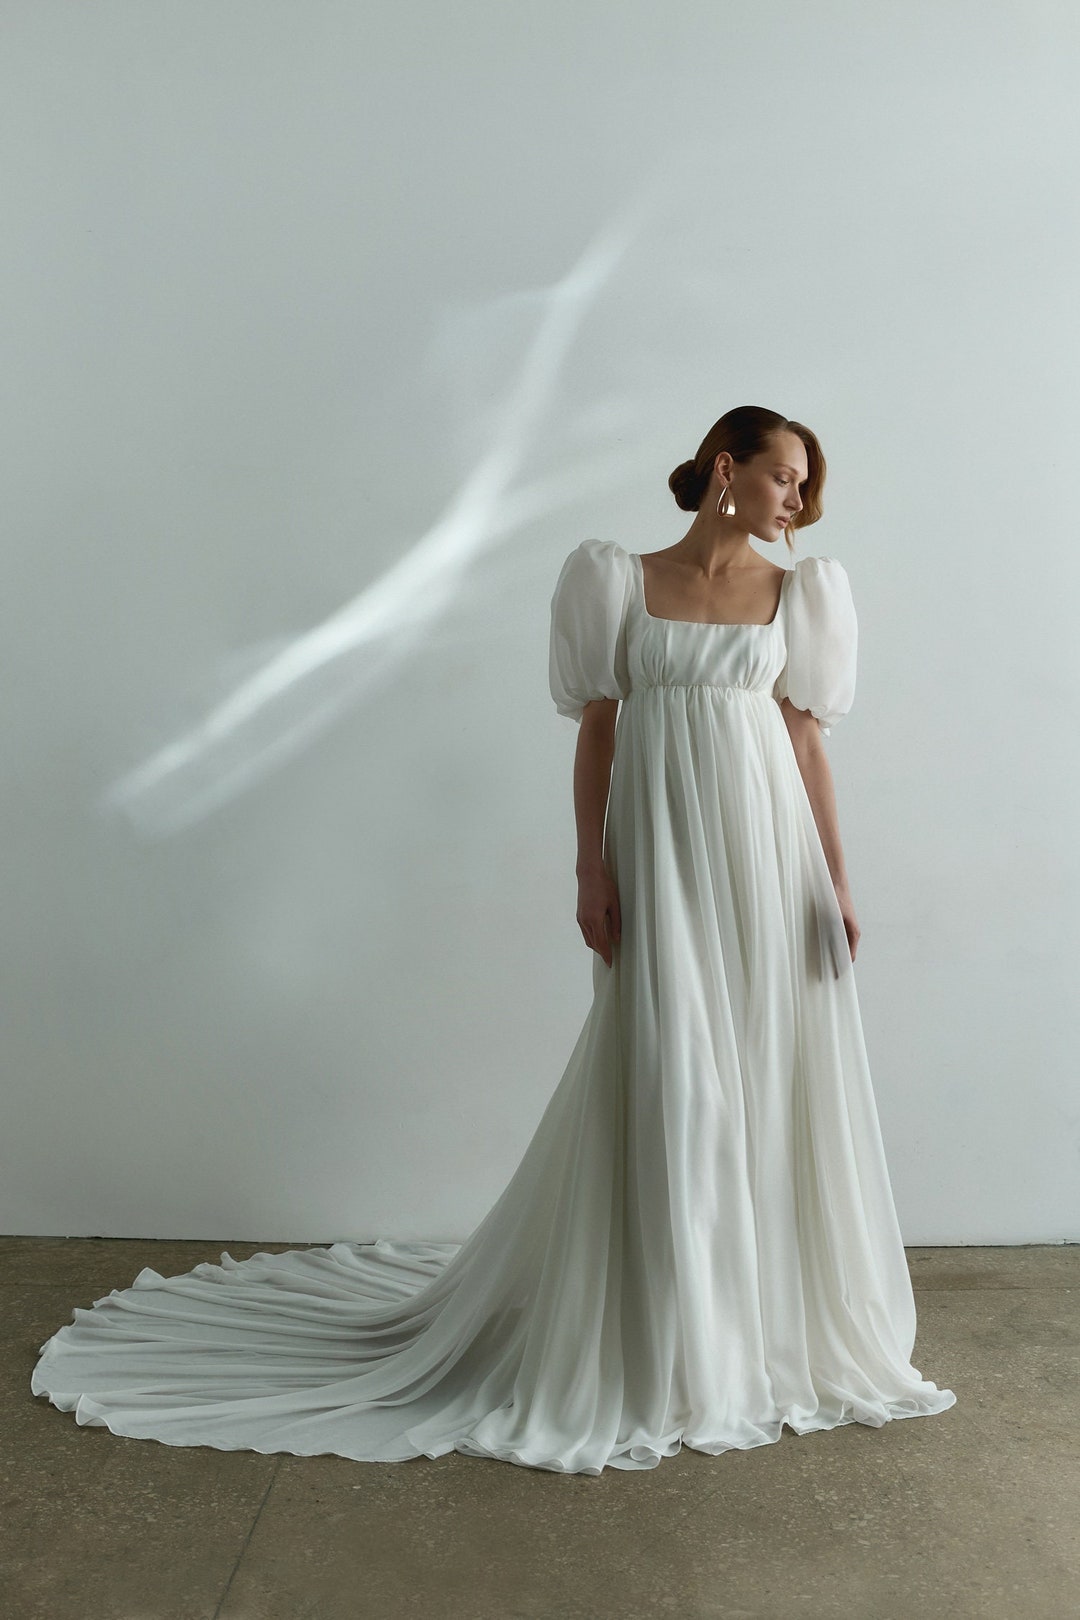 Gallery: Regency Wedding Dresses & Costumes - JustMaryp